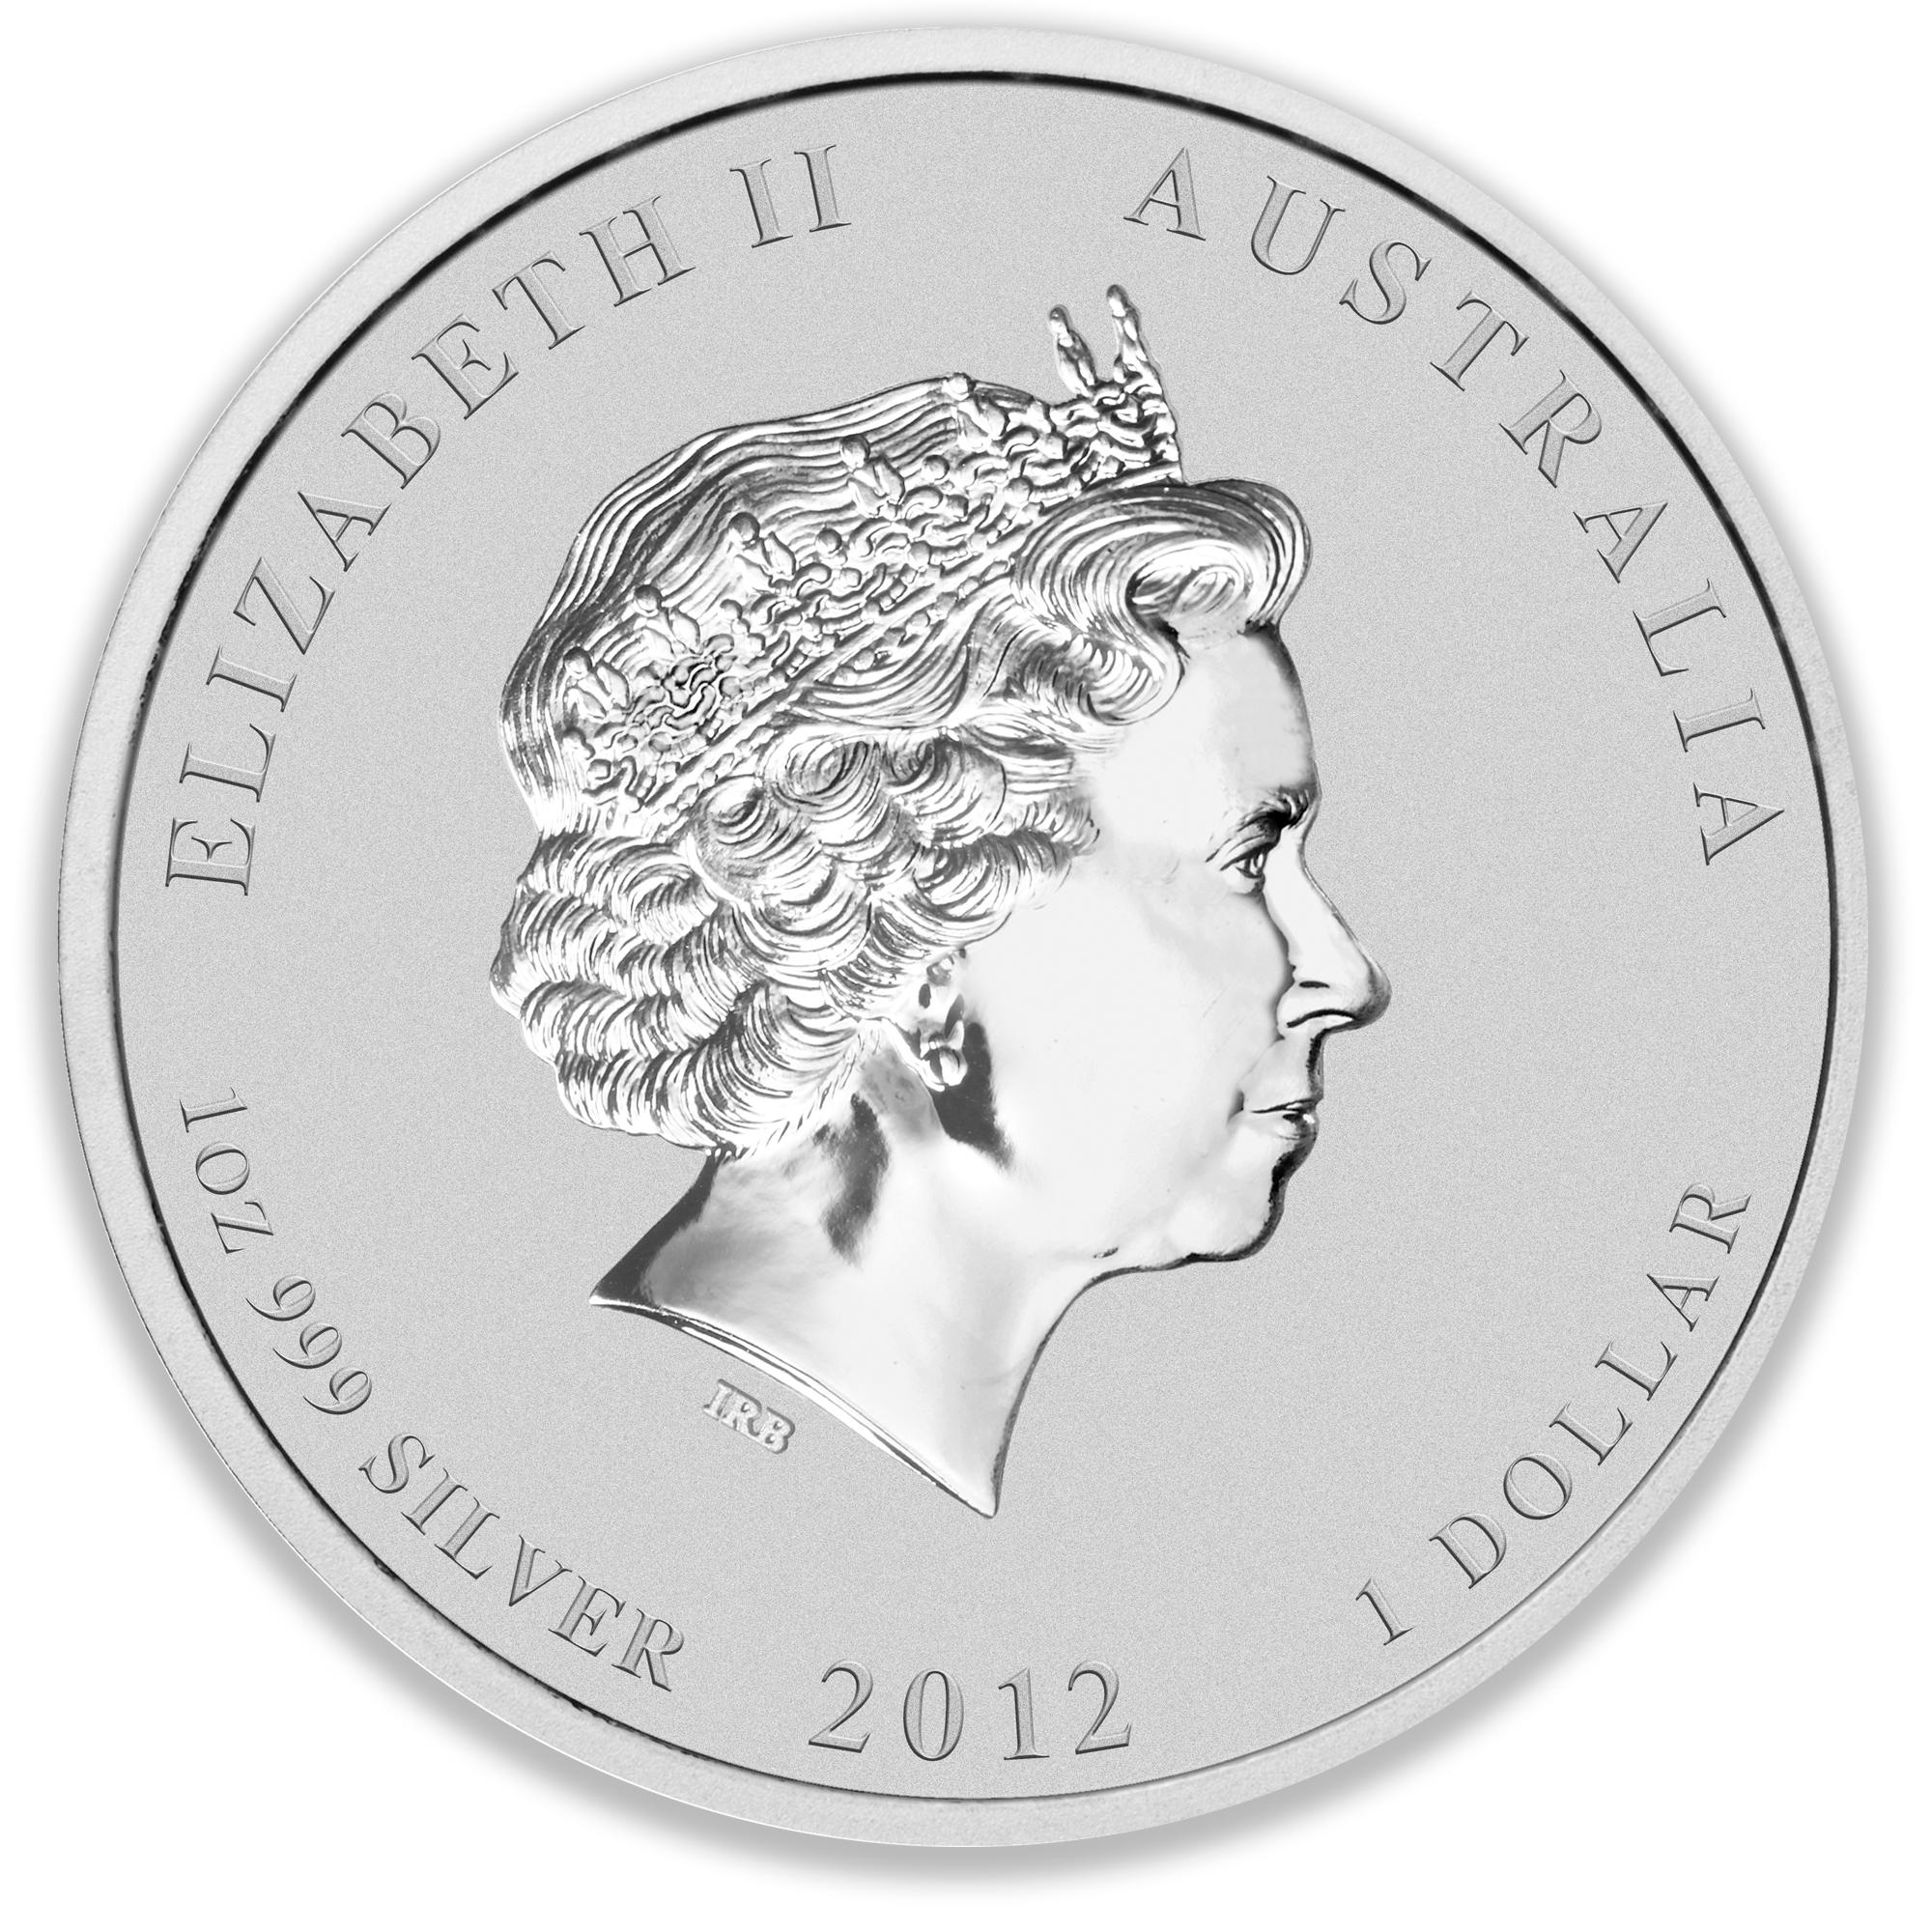 2012 1oz Perth Mint Silver Lunar Dragon Coin Series 2